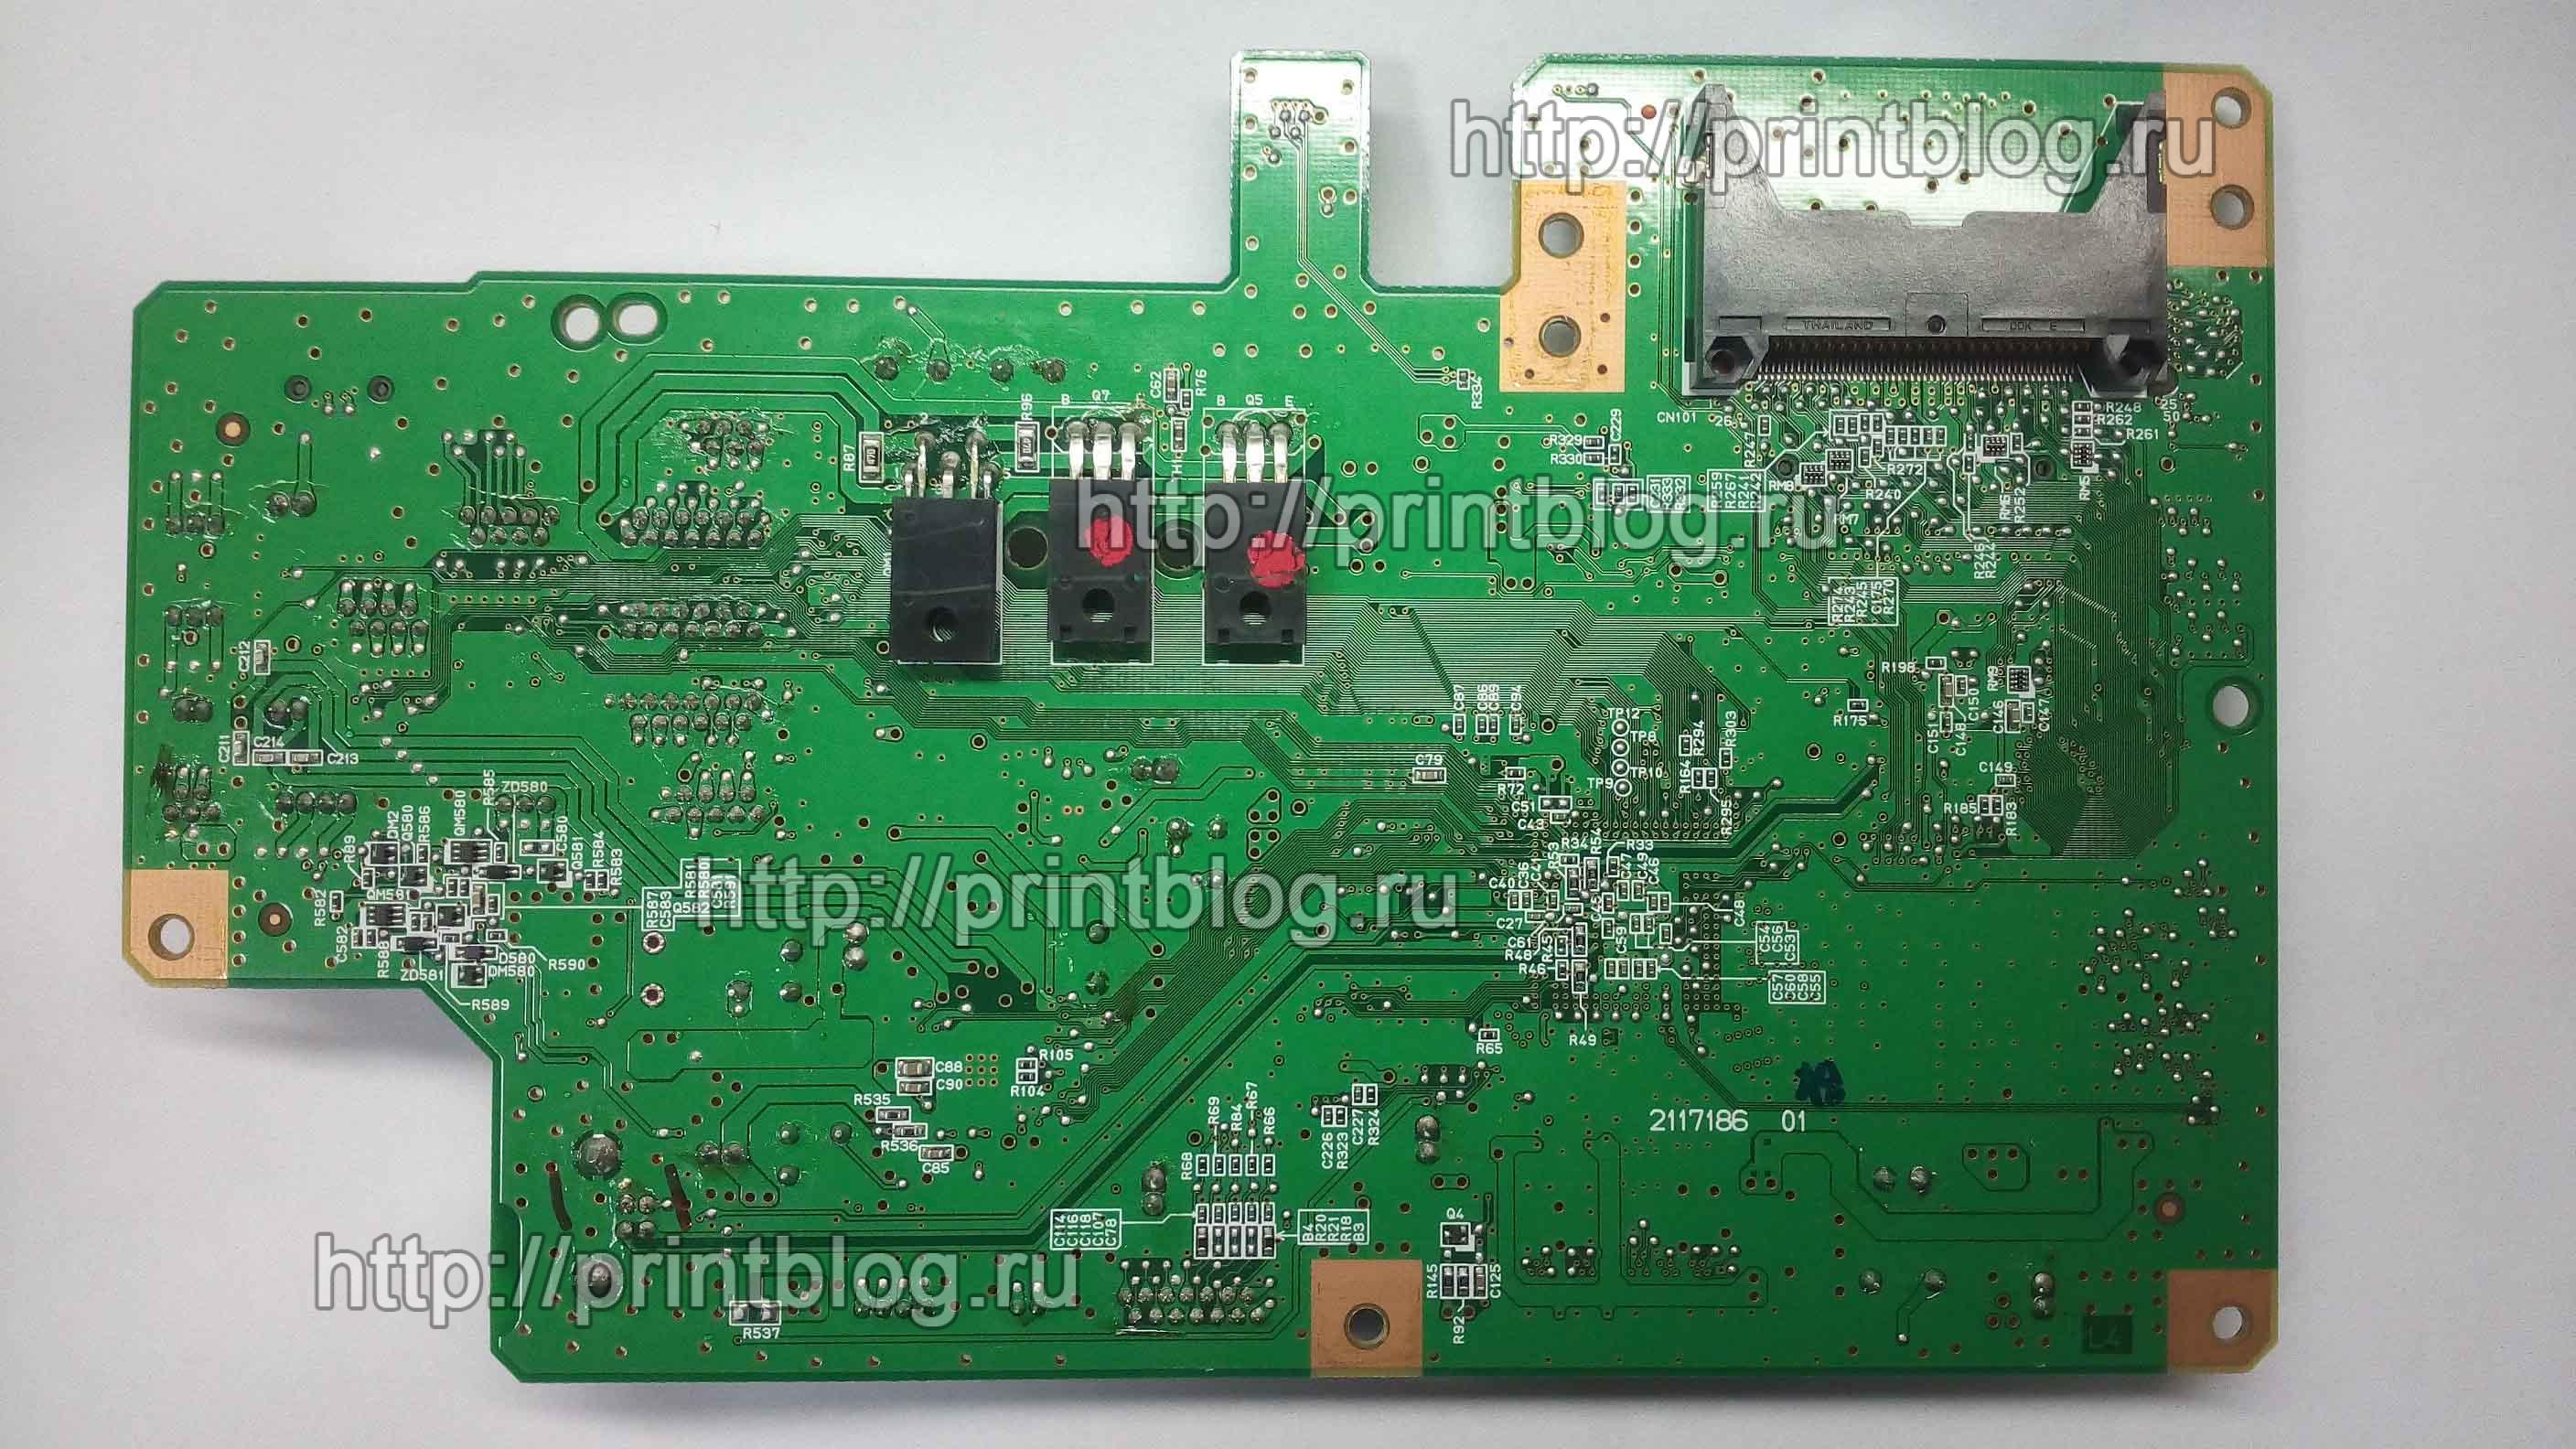 Главная плата Epson RX610, предохранитель, транзисторы, драйвер печатающей головки